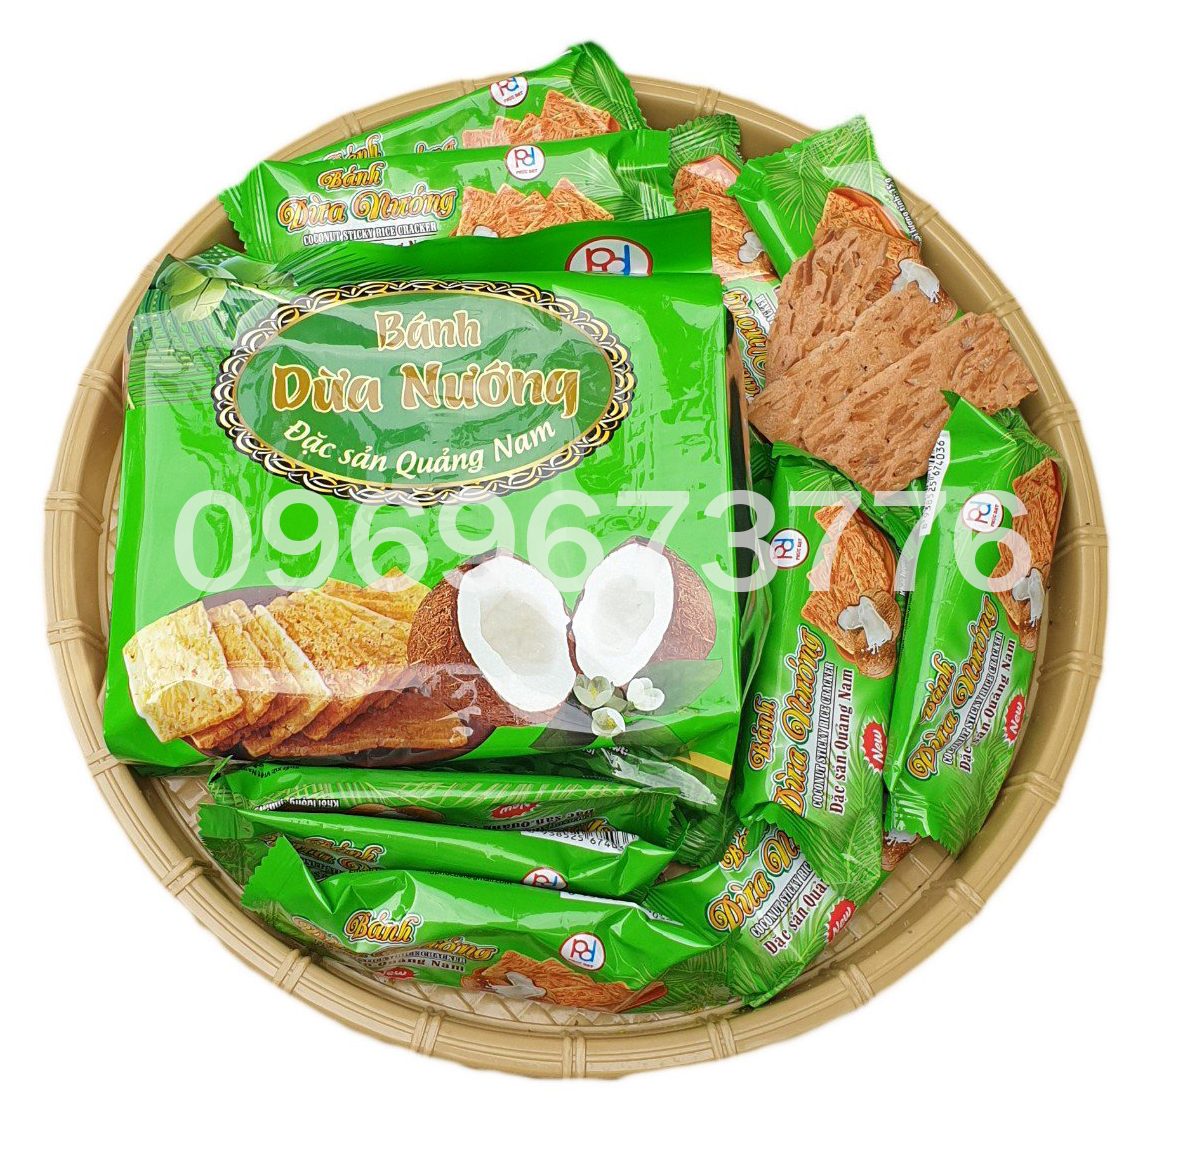 Bánh dừa nướng Phúc Đạt 180g - đặc sản Quảng Nam - đồ ăn vặt